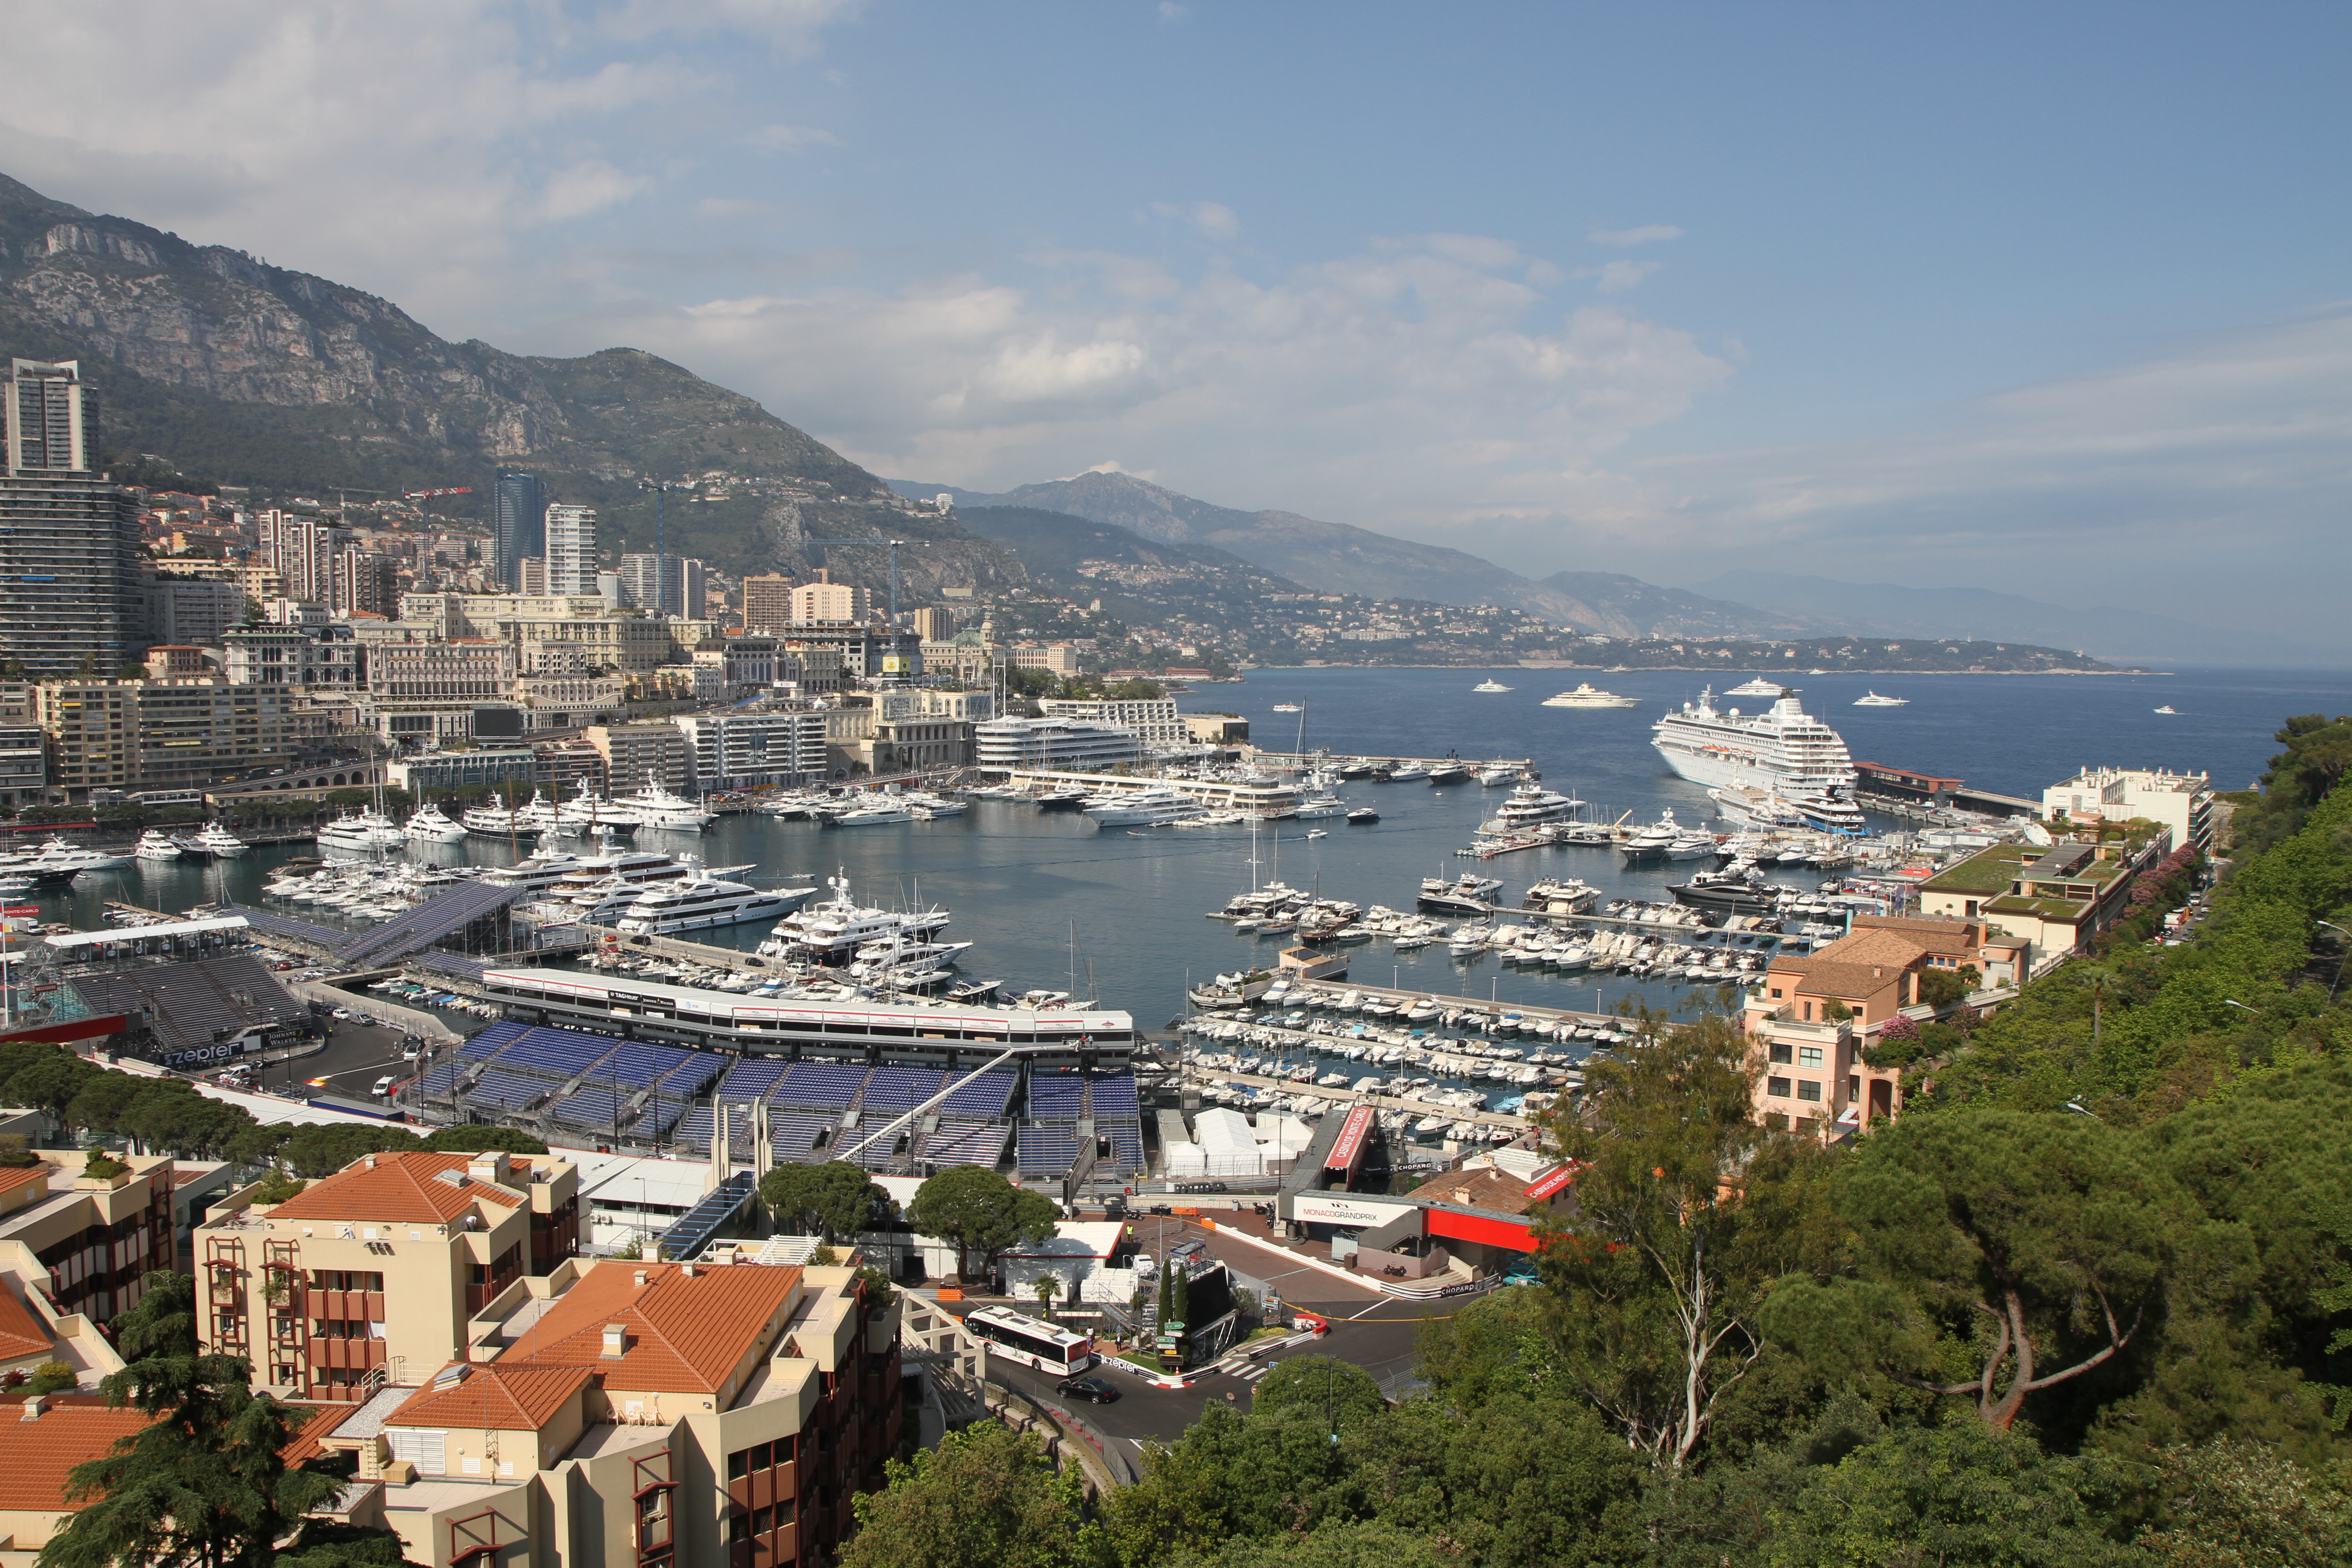 Marina in Monaco